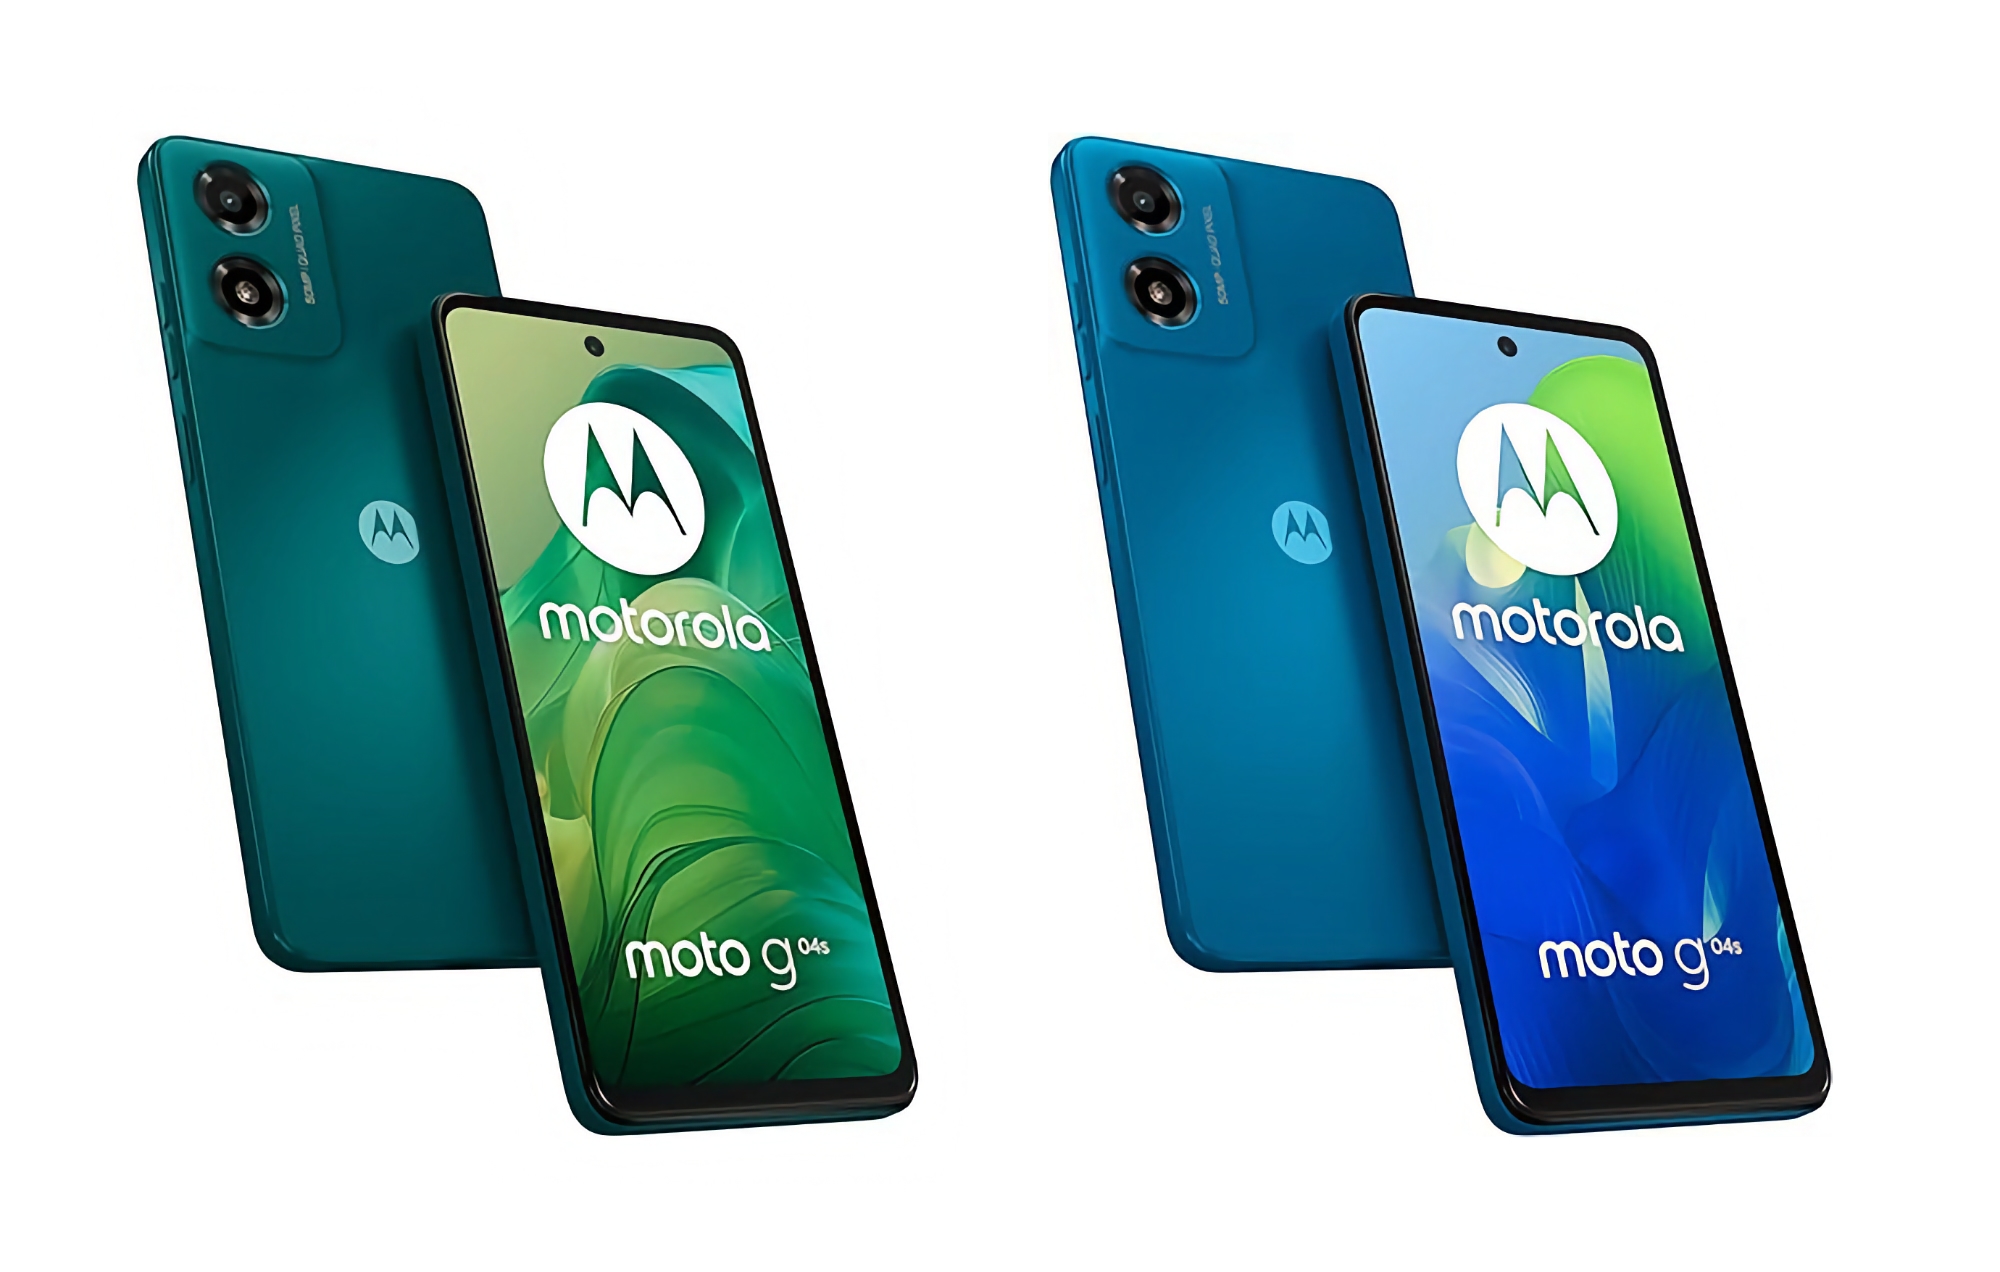 Motorola ha presentado el Moto G04s con pantalla IPS de 90Hz, chip Unisoc T606, batería de 5000mAh y un precio de 100 euros